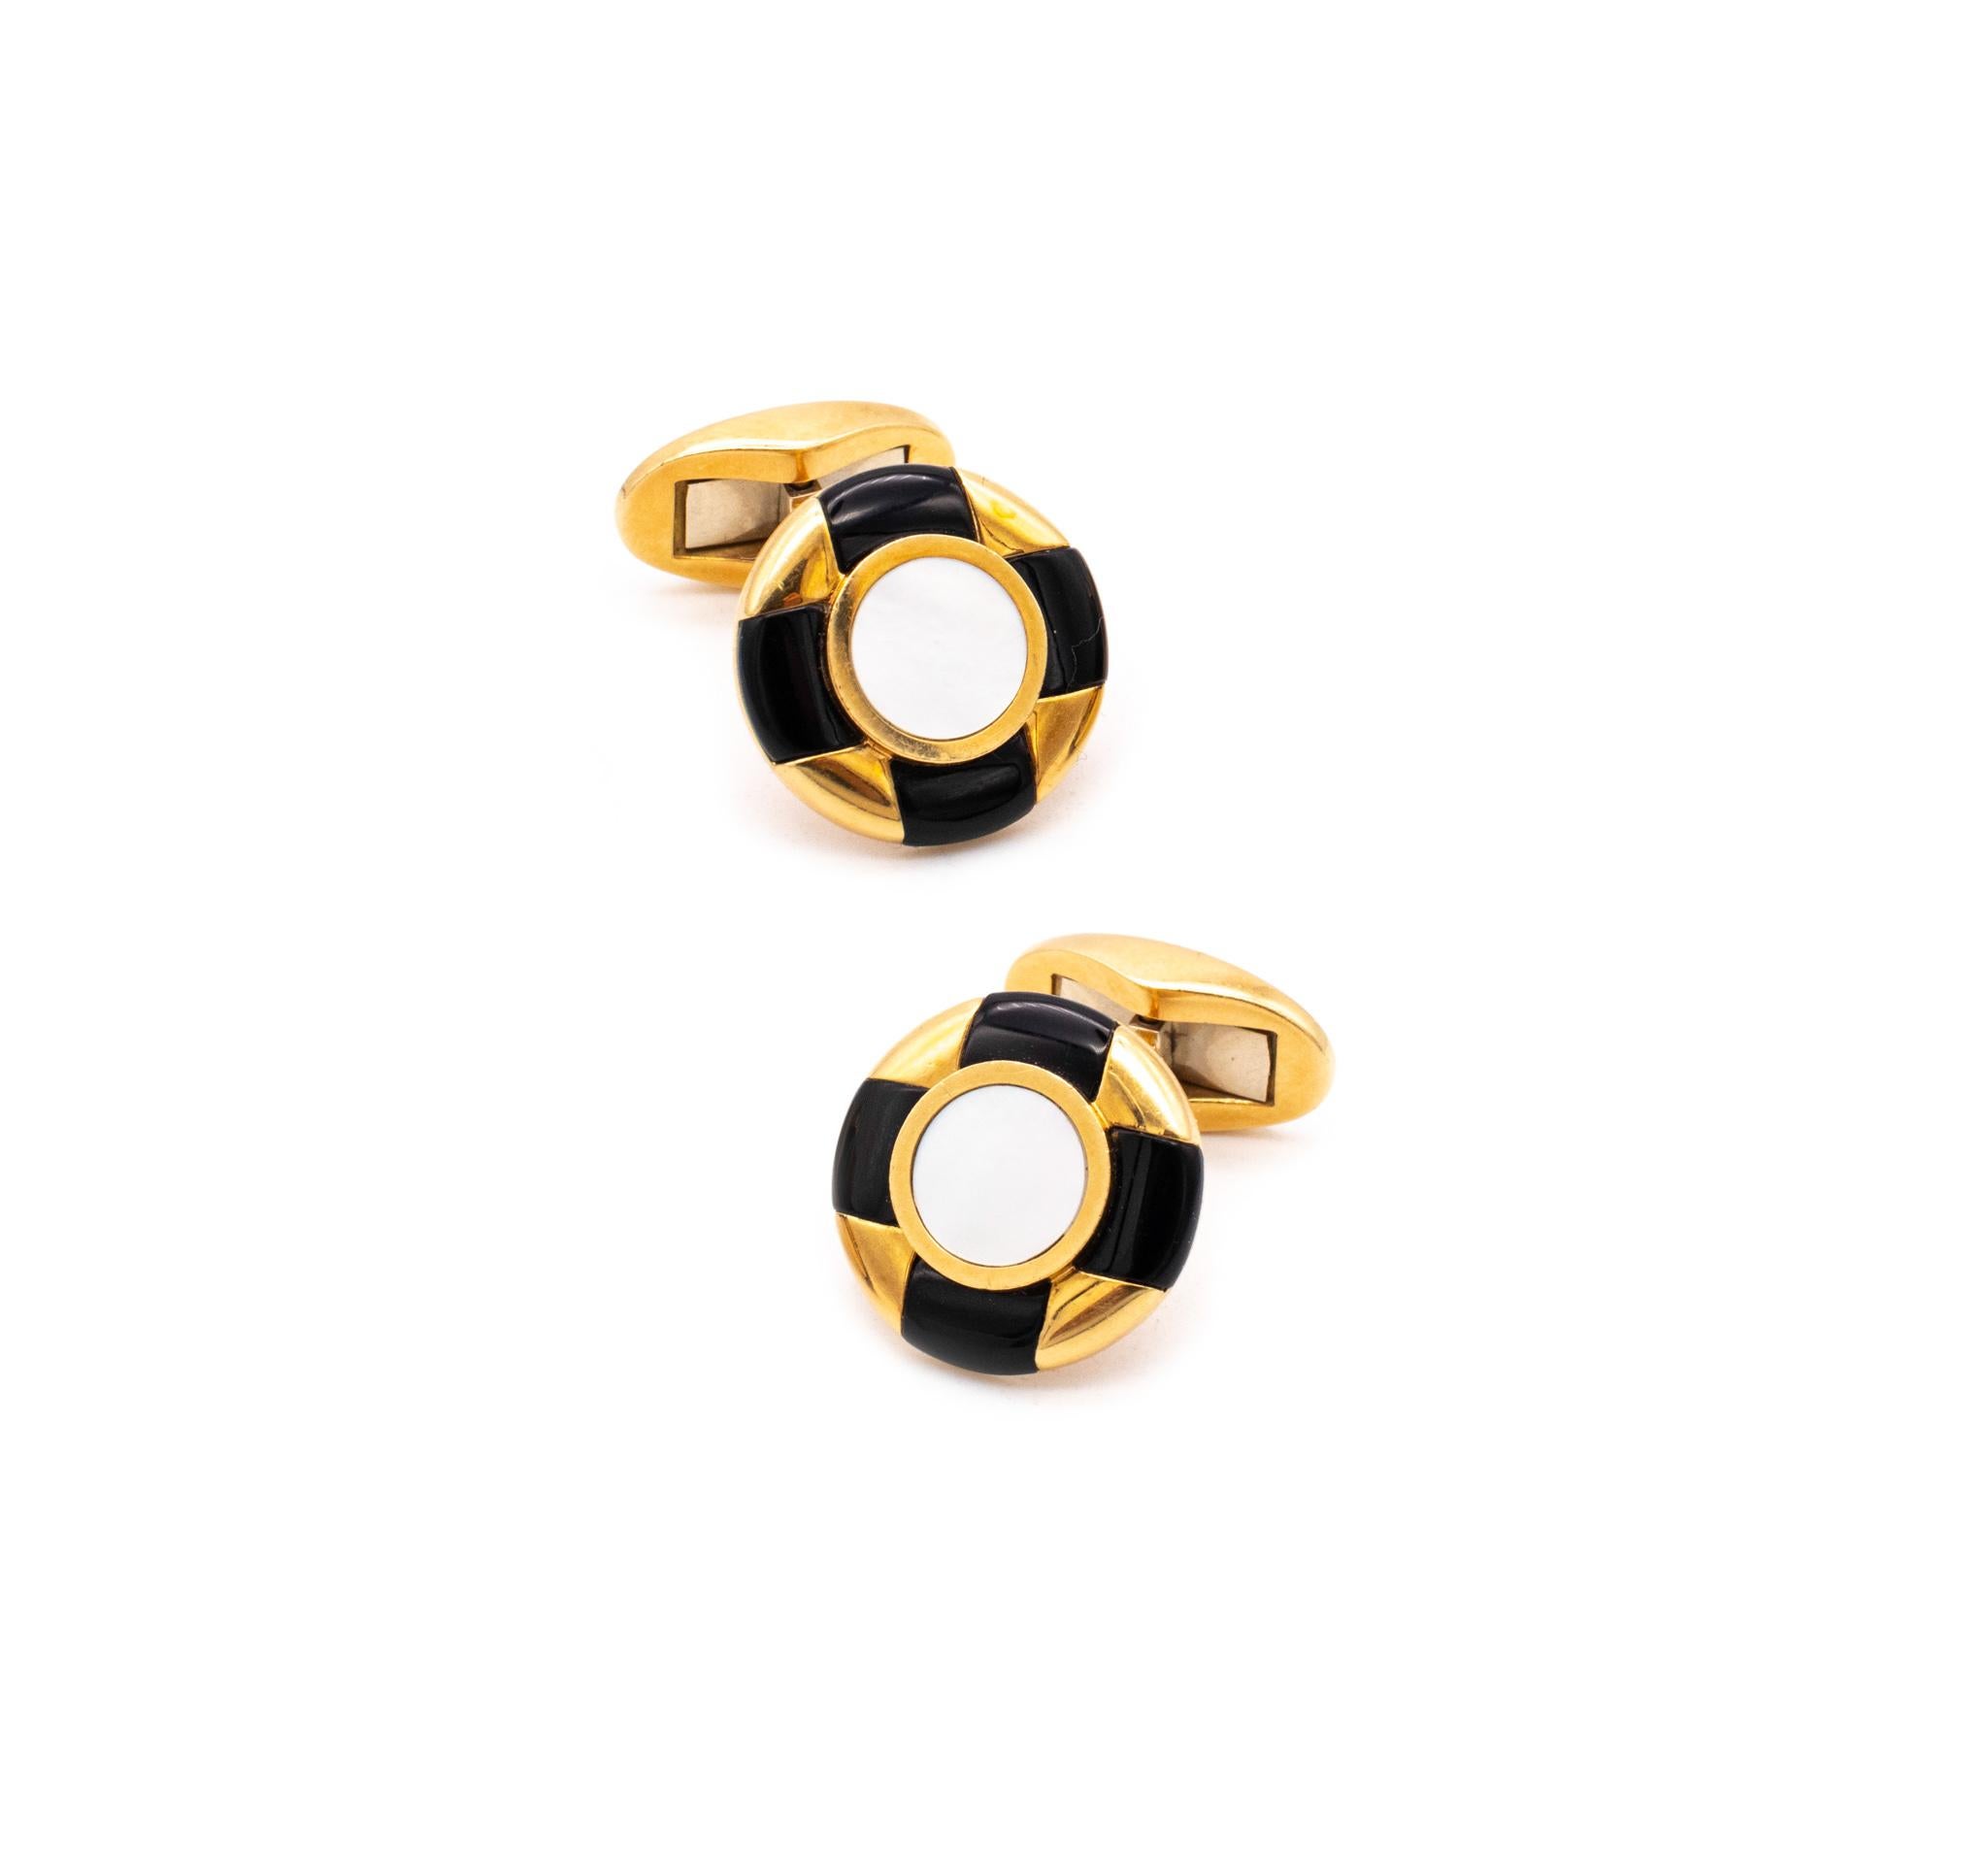 Élégante paire de boutons de manchette conçue par Tiffany & Co.

Belle paire de bijoux, réalisée en or jaune massif 18 carats poli et dotée d'une barre T mobile à charnière.

Embelli, avec un motif géométrique, créé à partir de sculptures d'onyx